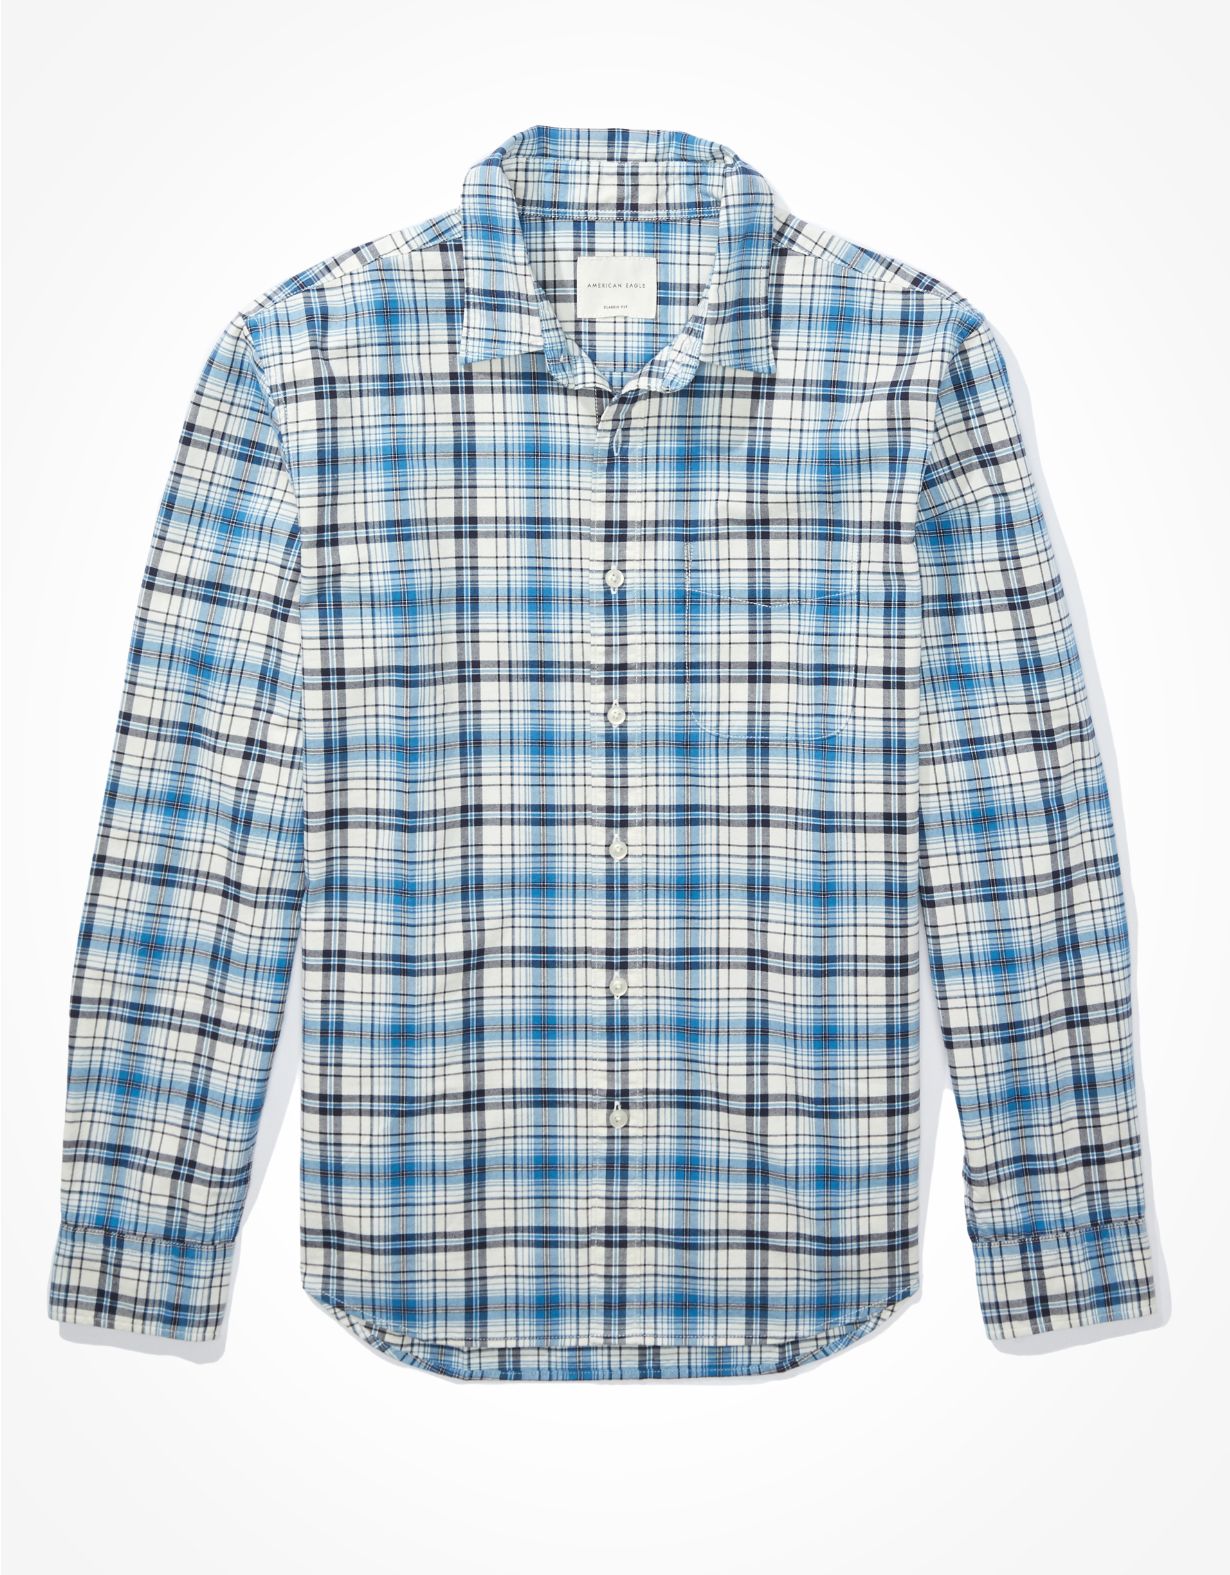 AE Plaid Oxford Button-Up Shirt